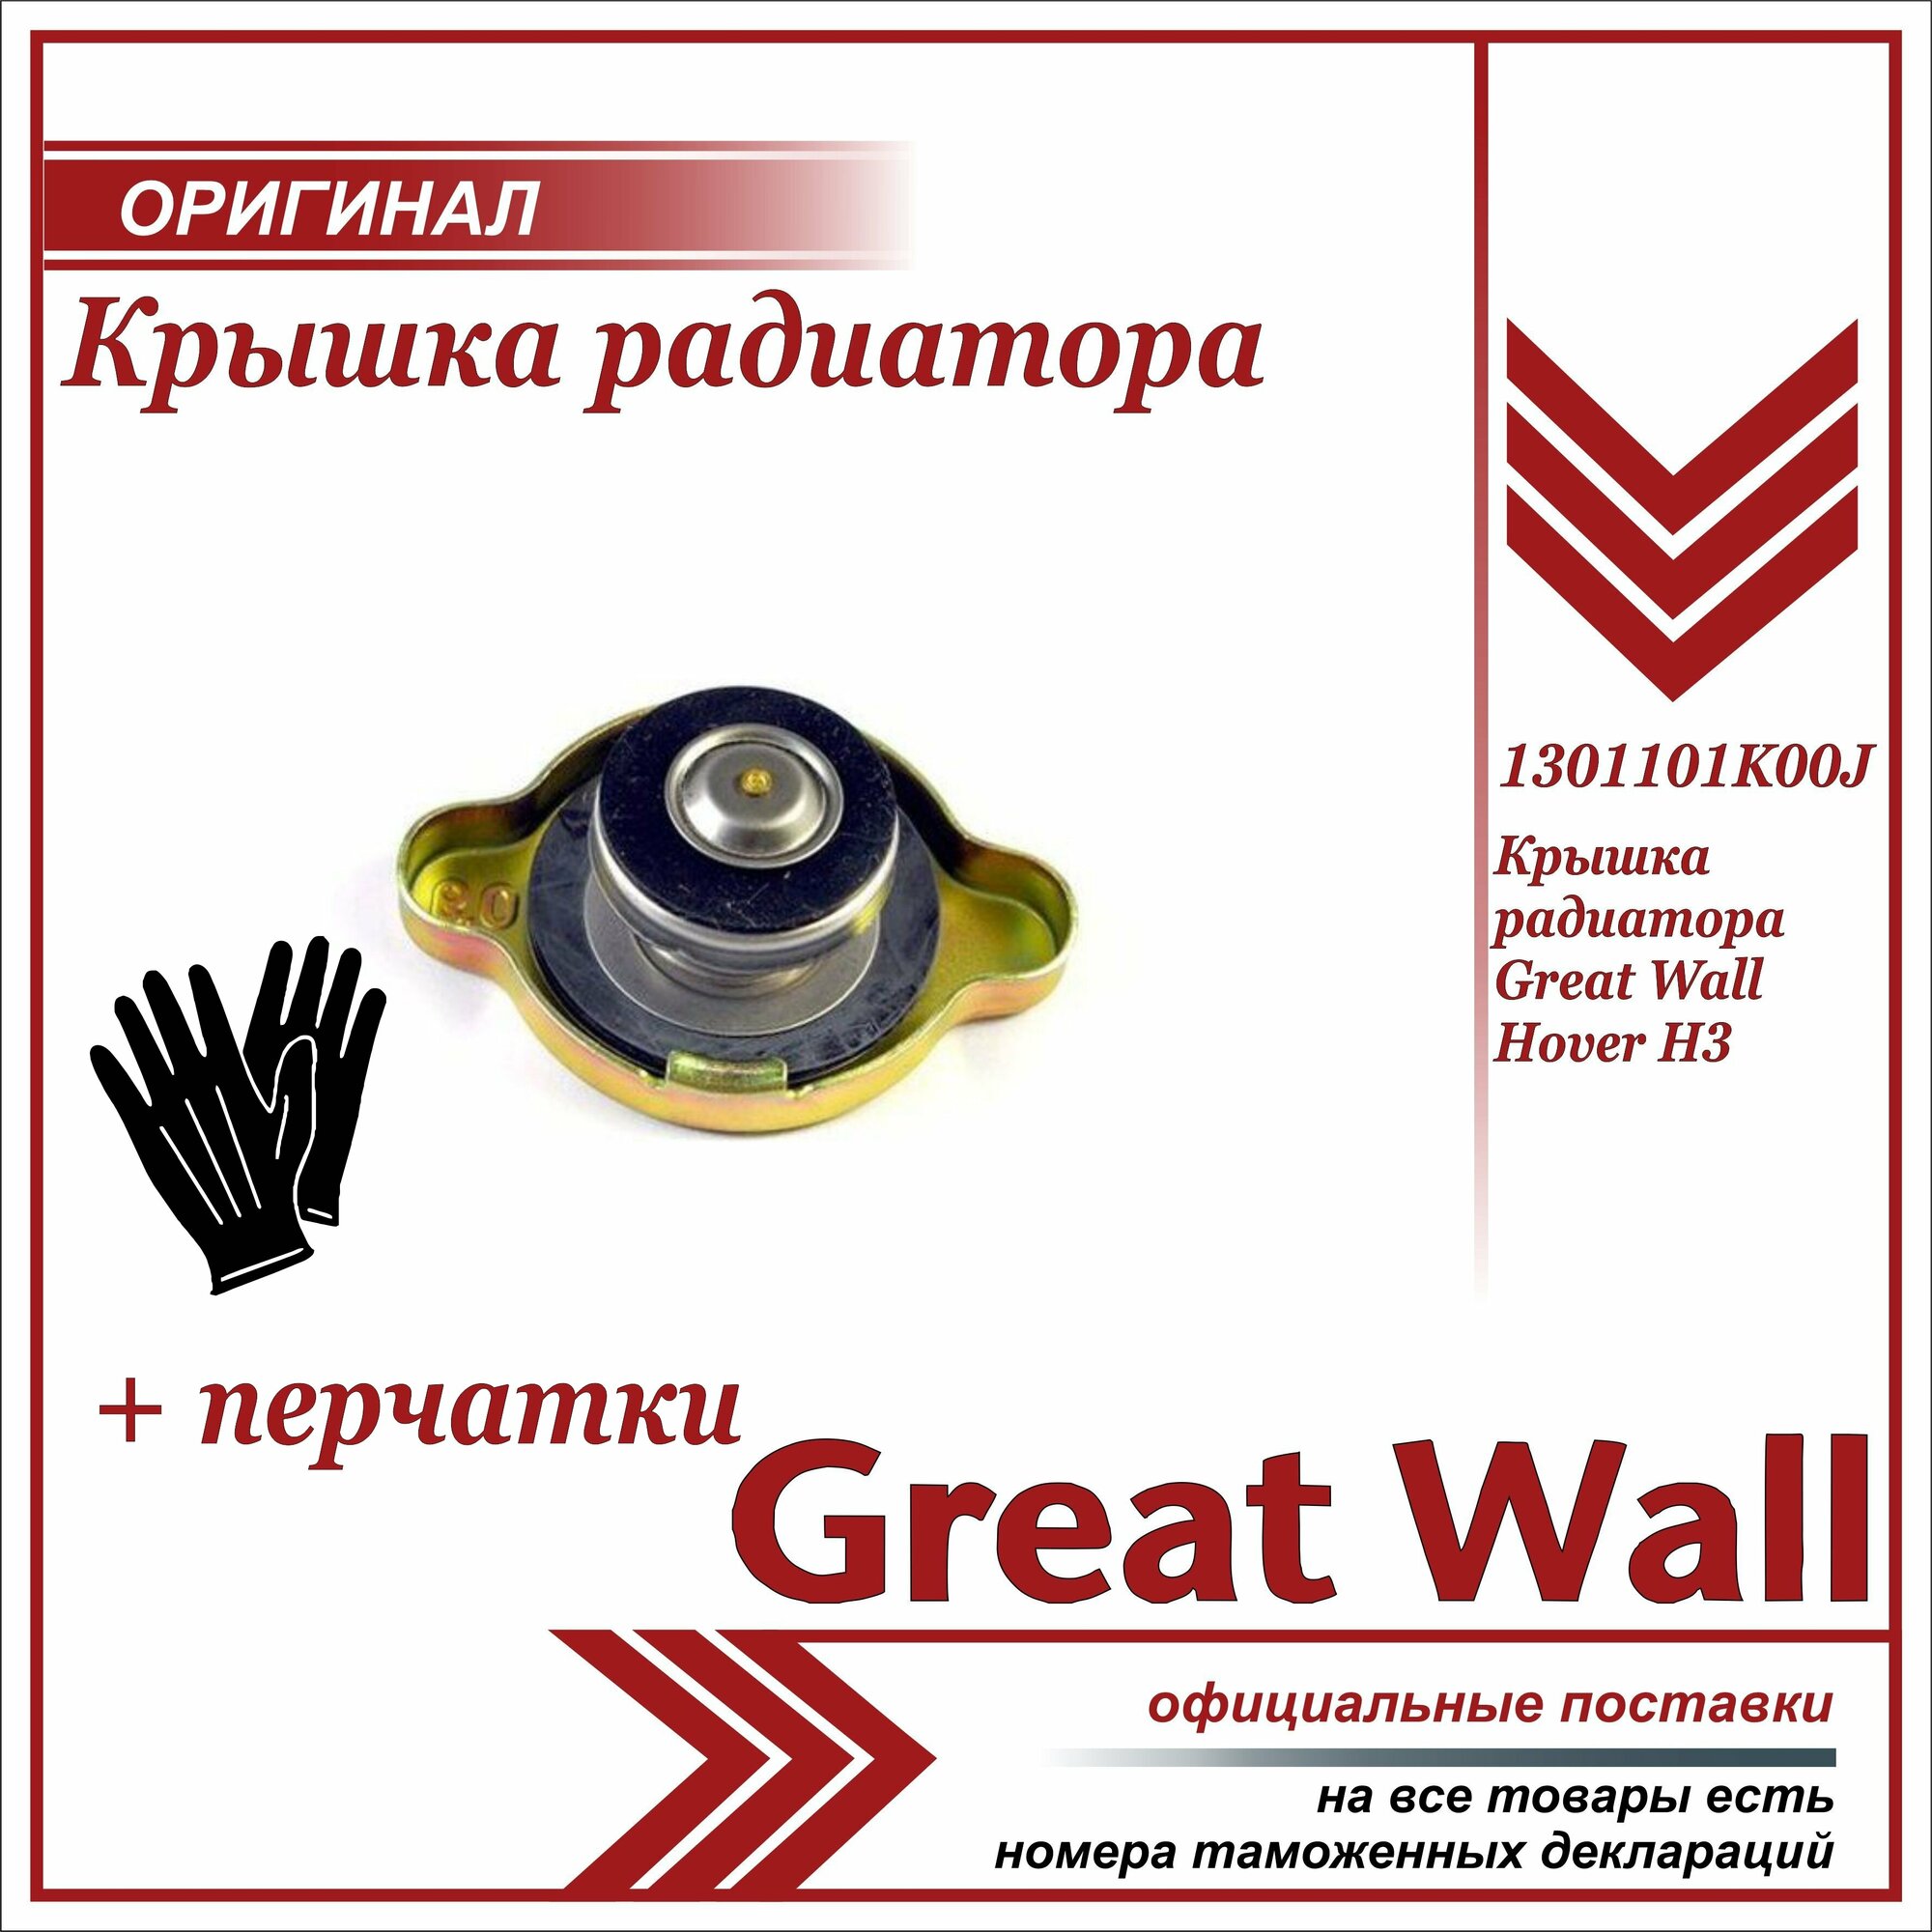 Крышка радиатора Грейт Вул Ховер H2, Н3, Н5, Great Wall Hover Н2, H3, Н5 + пара перчаток в комплекте